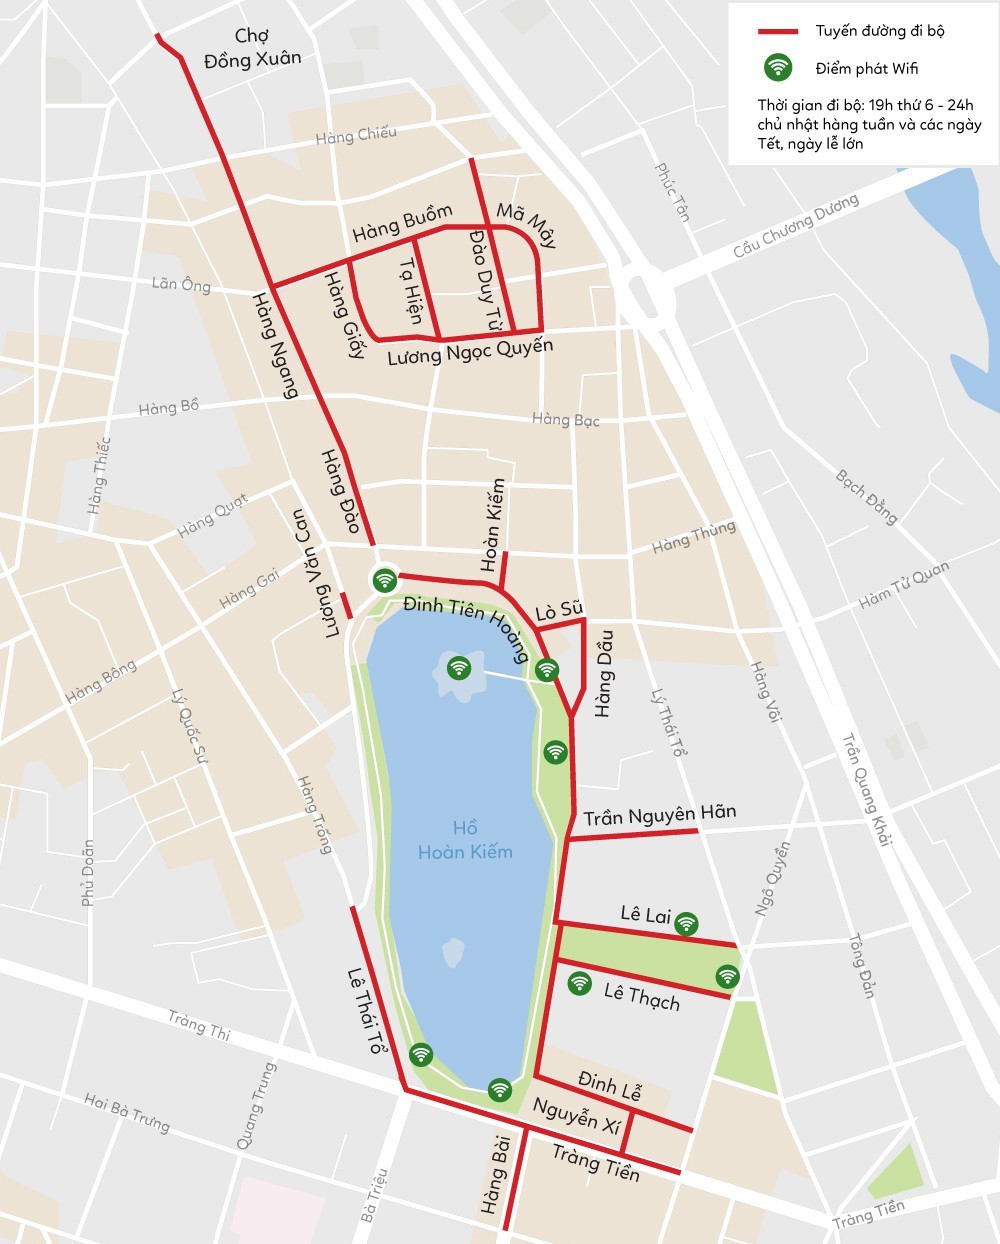 hanoi-walking-street-map